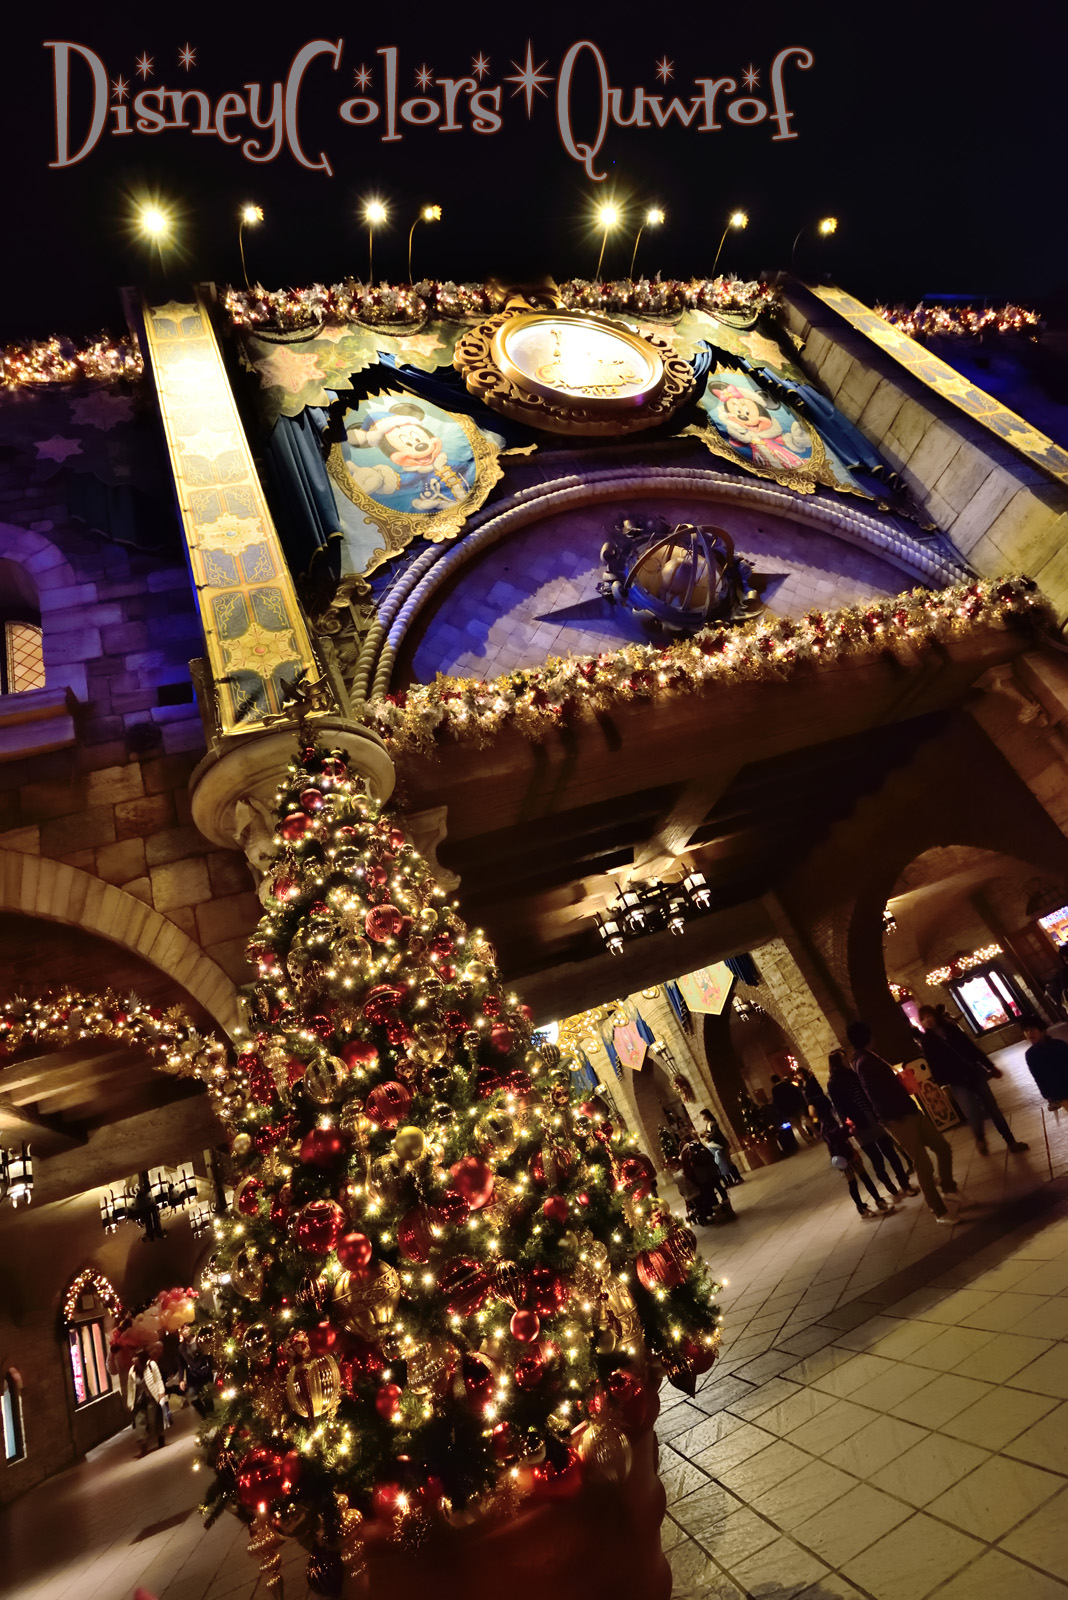 クリスマスイルミネーションをじっくり楽しむ夜 14年11月7日 東京ディズニーシーのインレポ後編 Disney Colors Blog